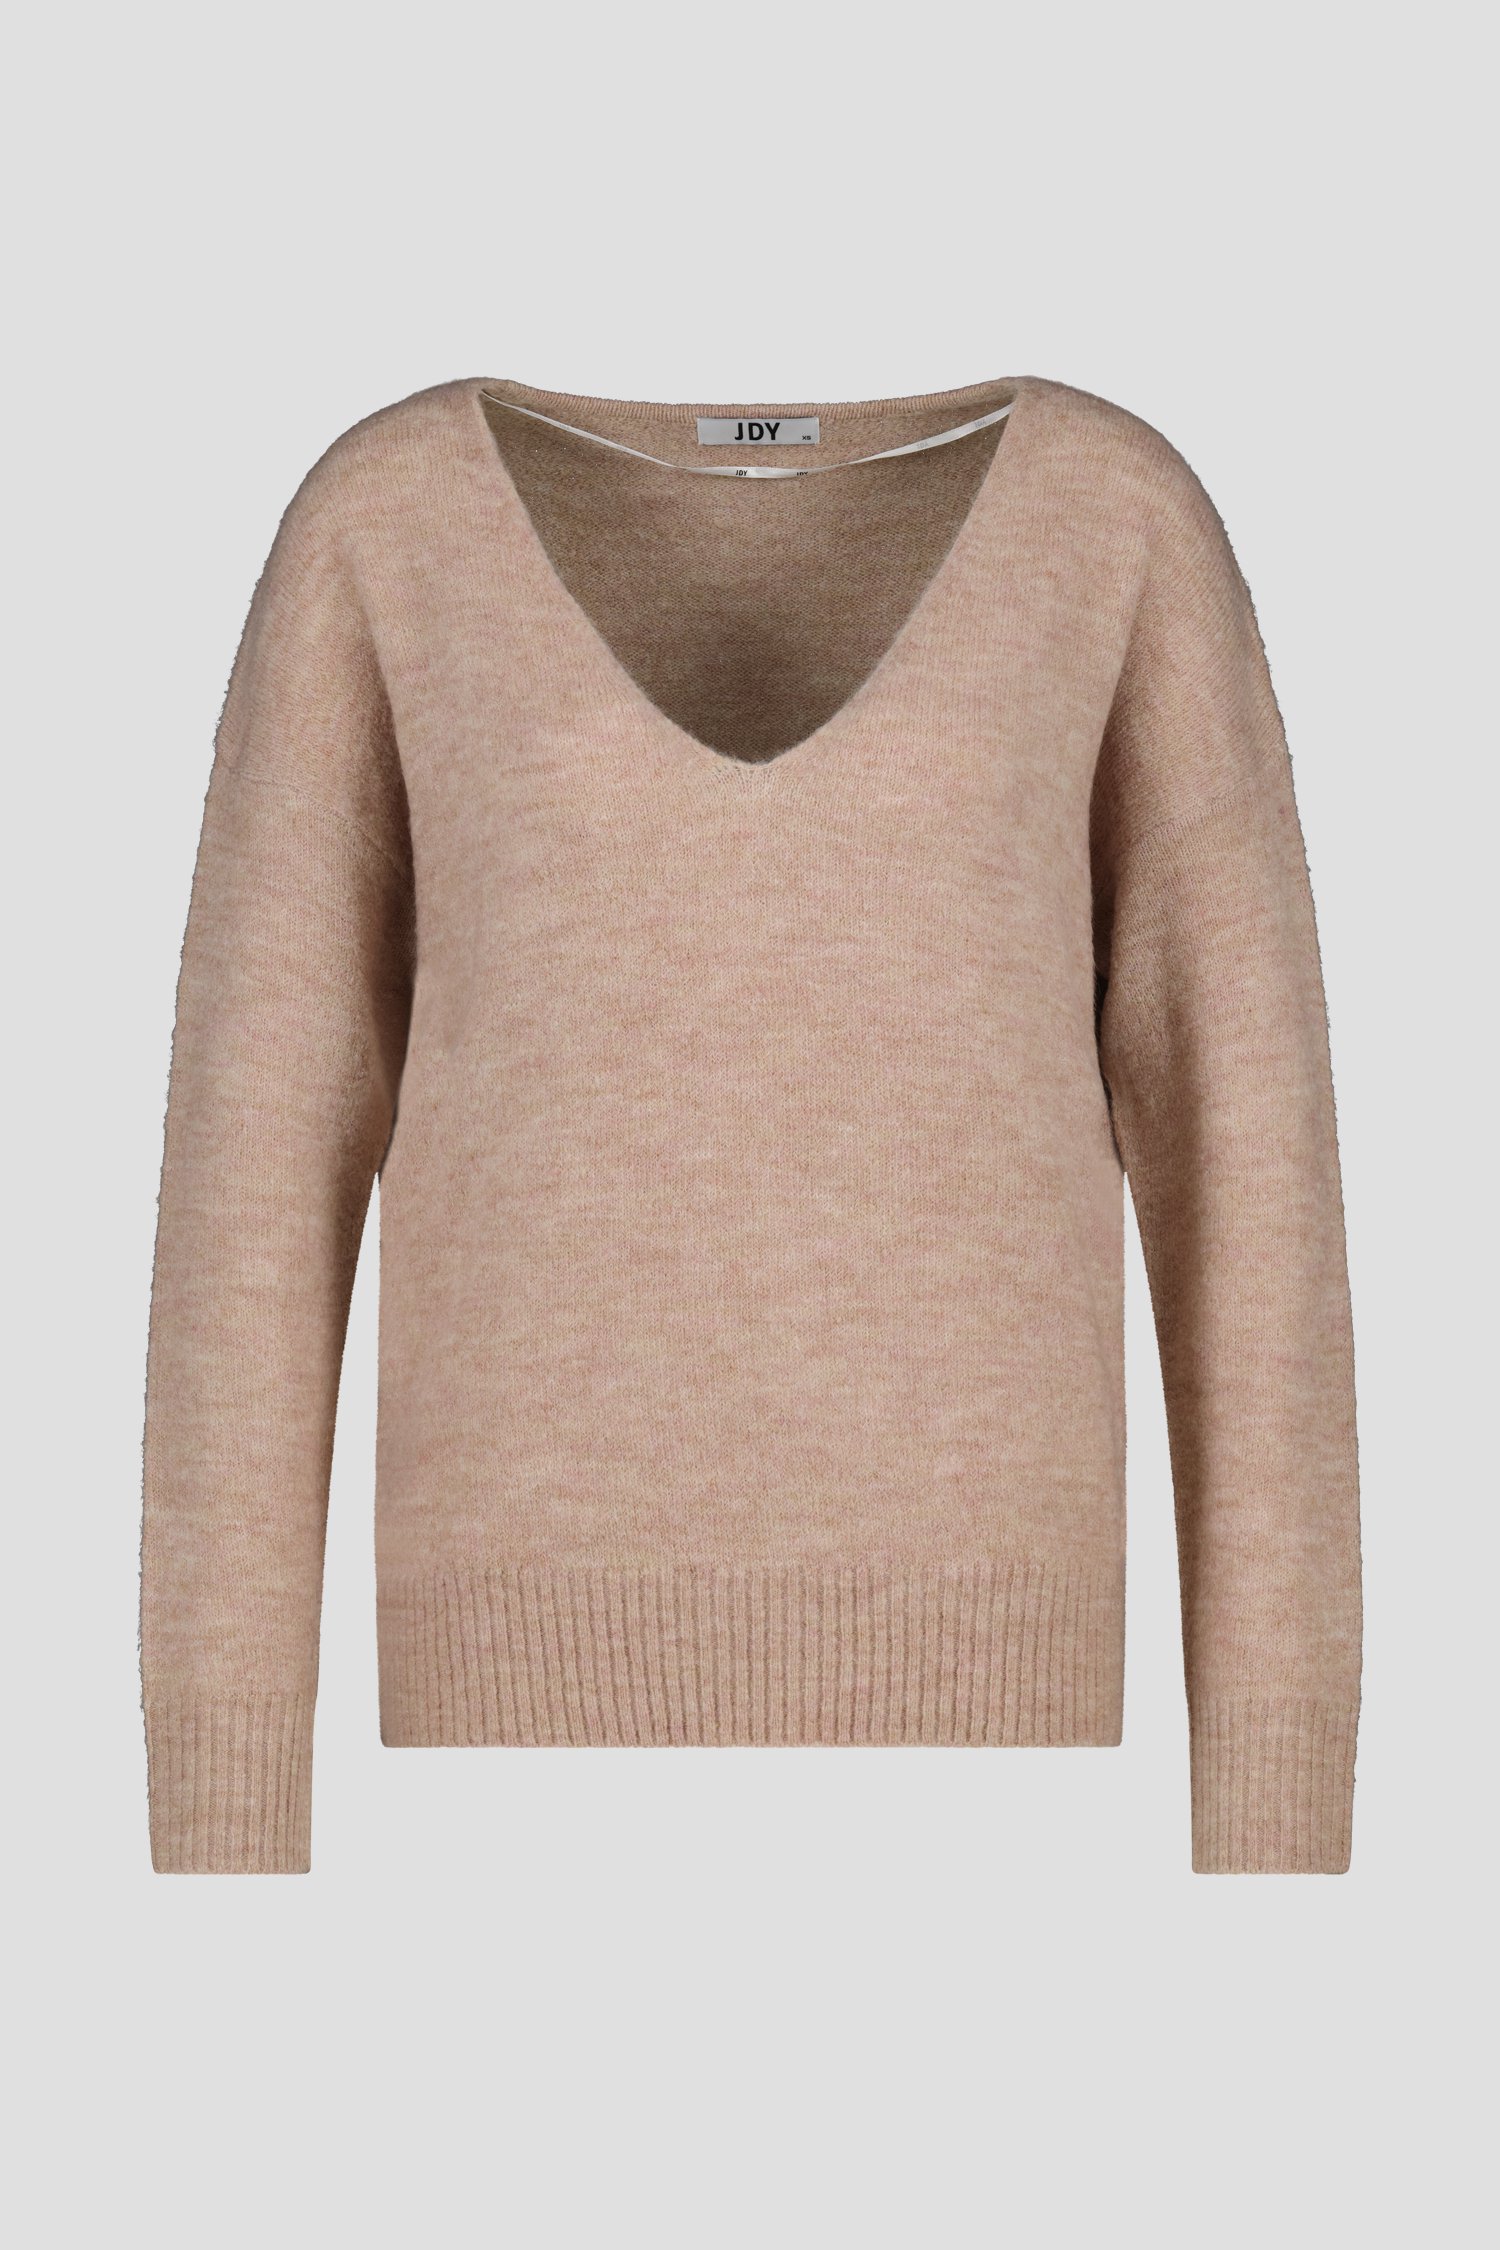 Gebreide roze trui van JDY voor Dames